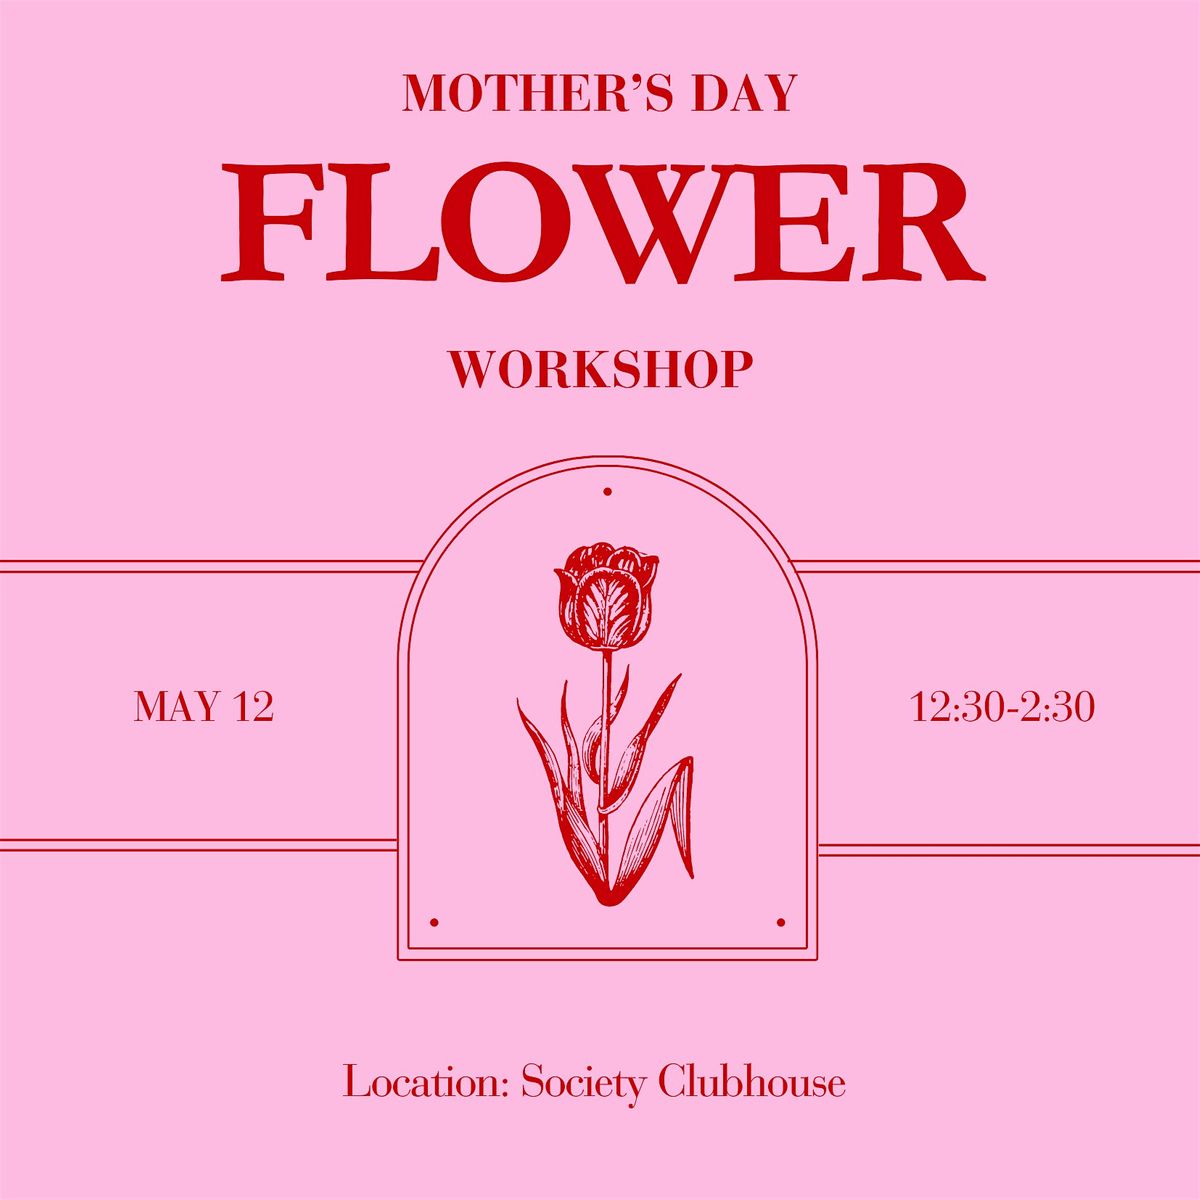 Mother's Day Flower Workshop